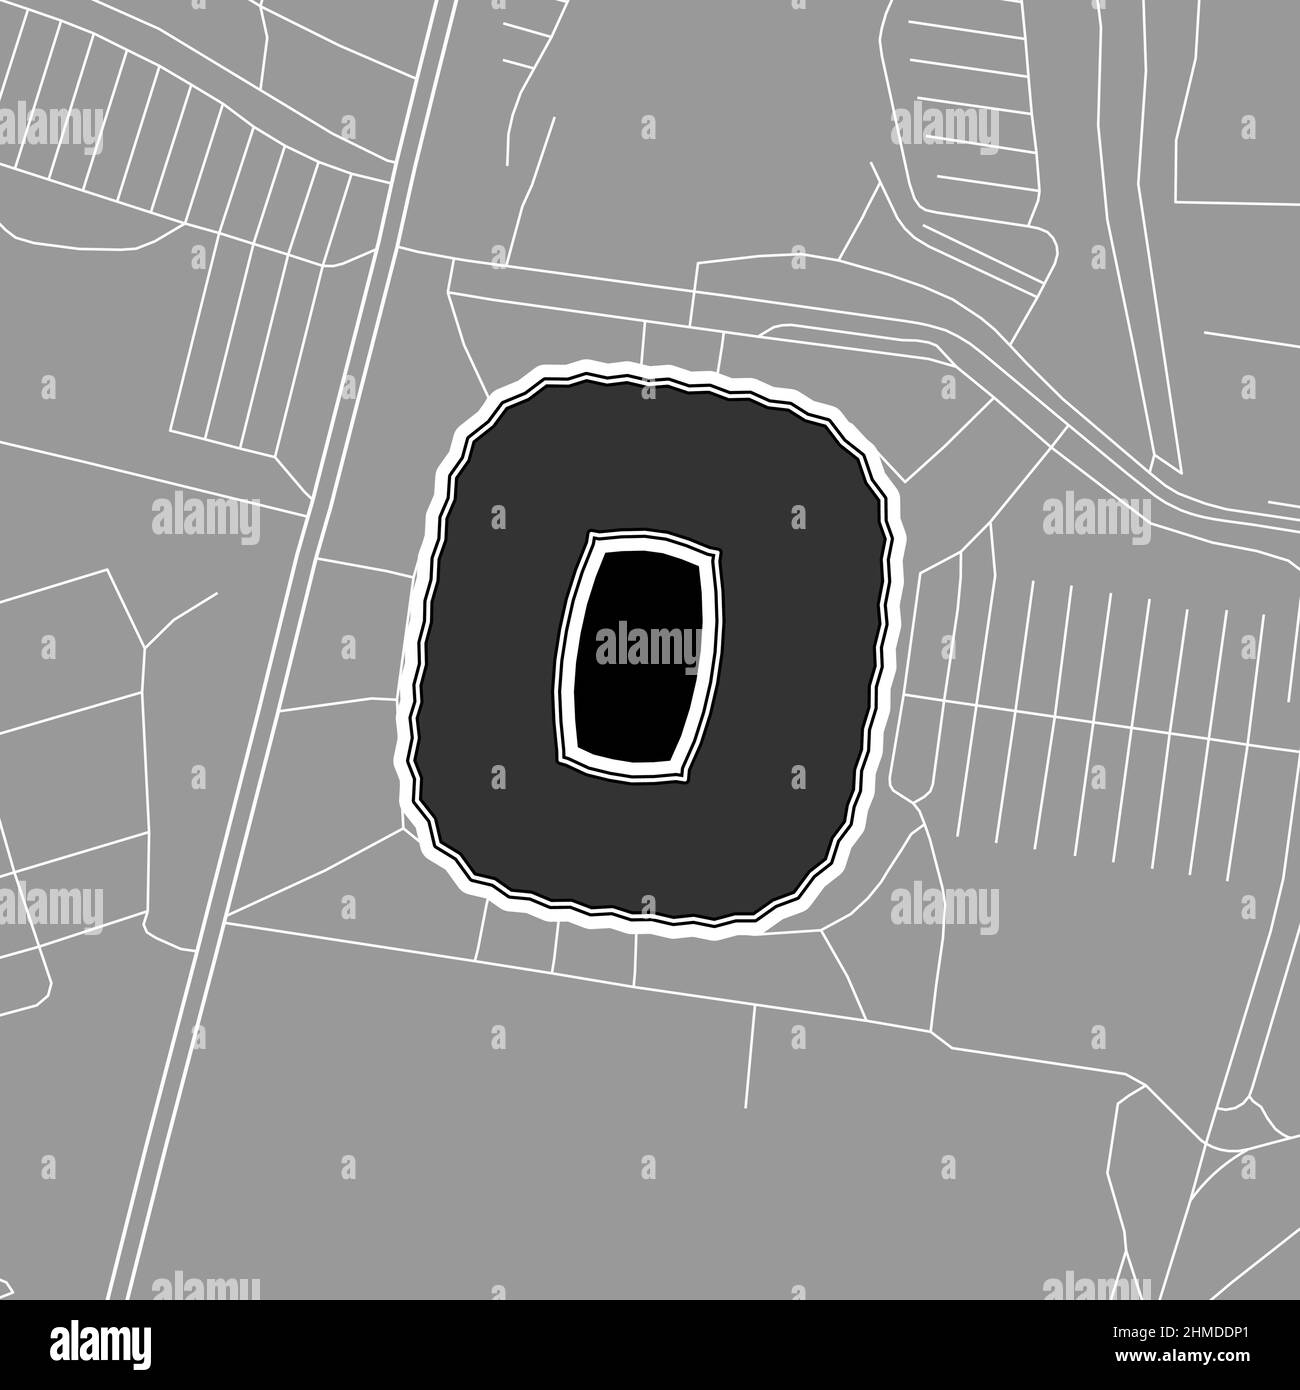 Amburgo, Baseball MLB Stadium, mappa vettoriale. La mappa dello stadio di baseball è stata disegnata con aree bianche e linee per le strade principali, le strade laterali. Illustrazione Vettoriale